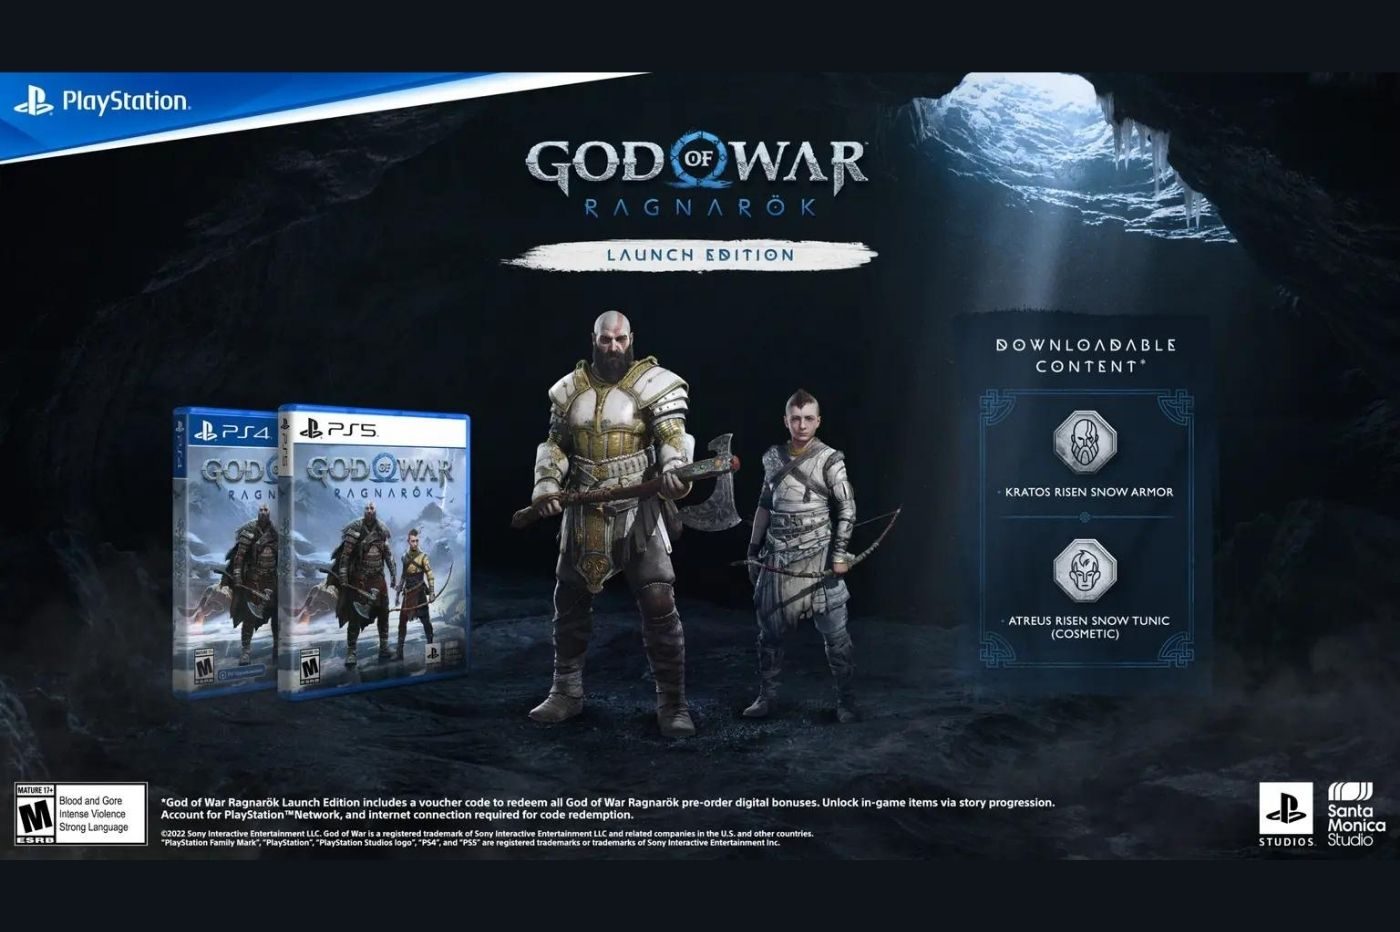 Imagen promocional de una edición especial de God of War y sus contenidos.